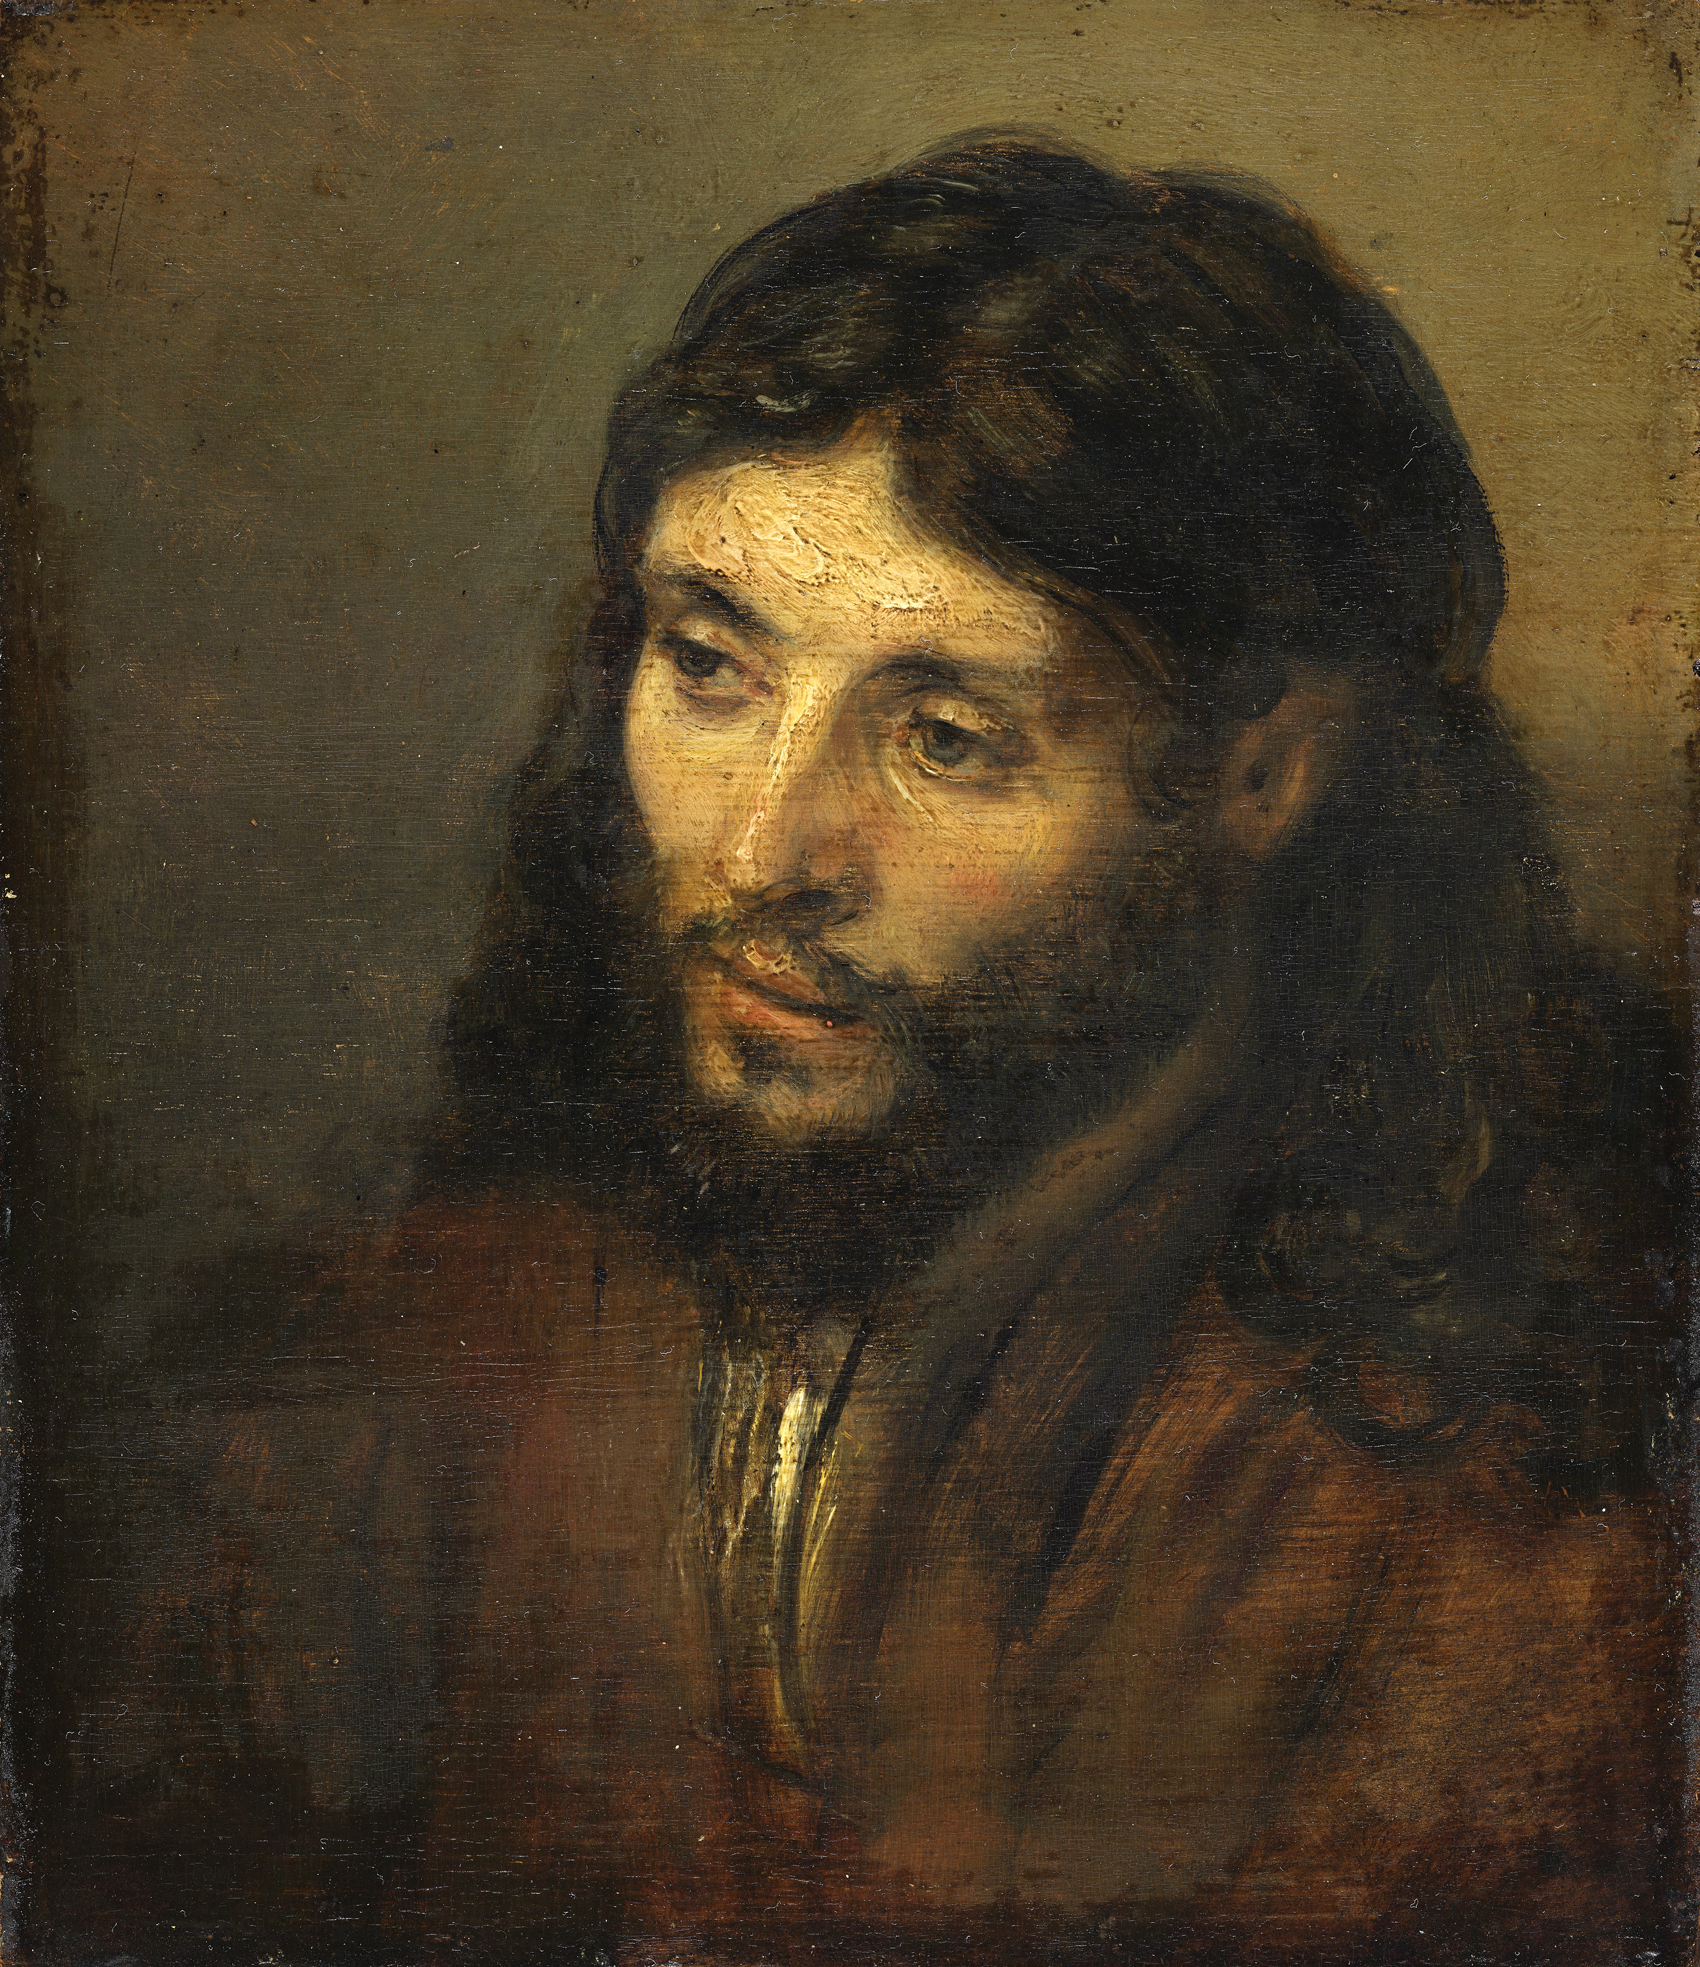 Rembrandt van Rijn, Head of Christ (c. 1640)